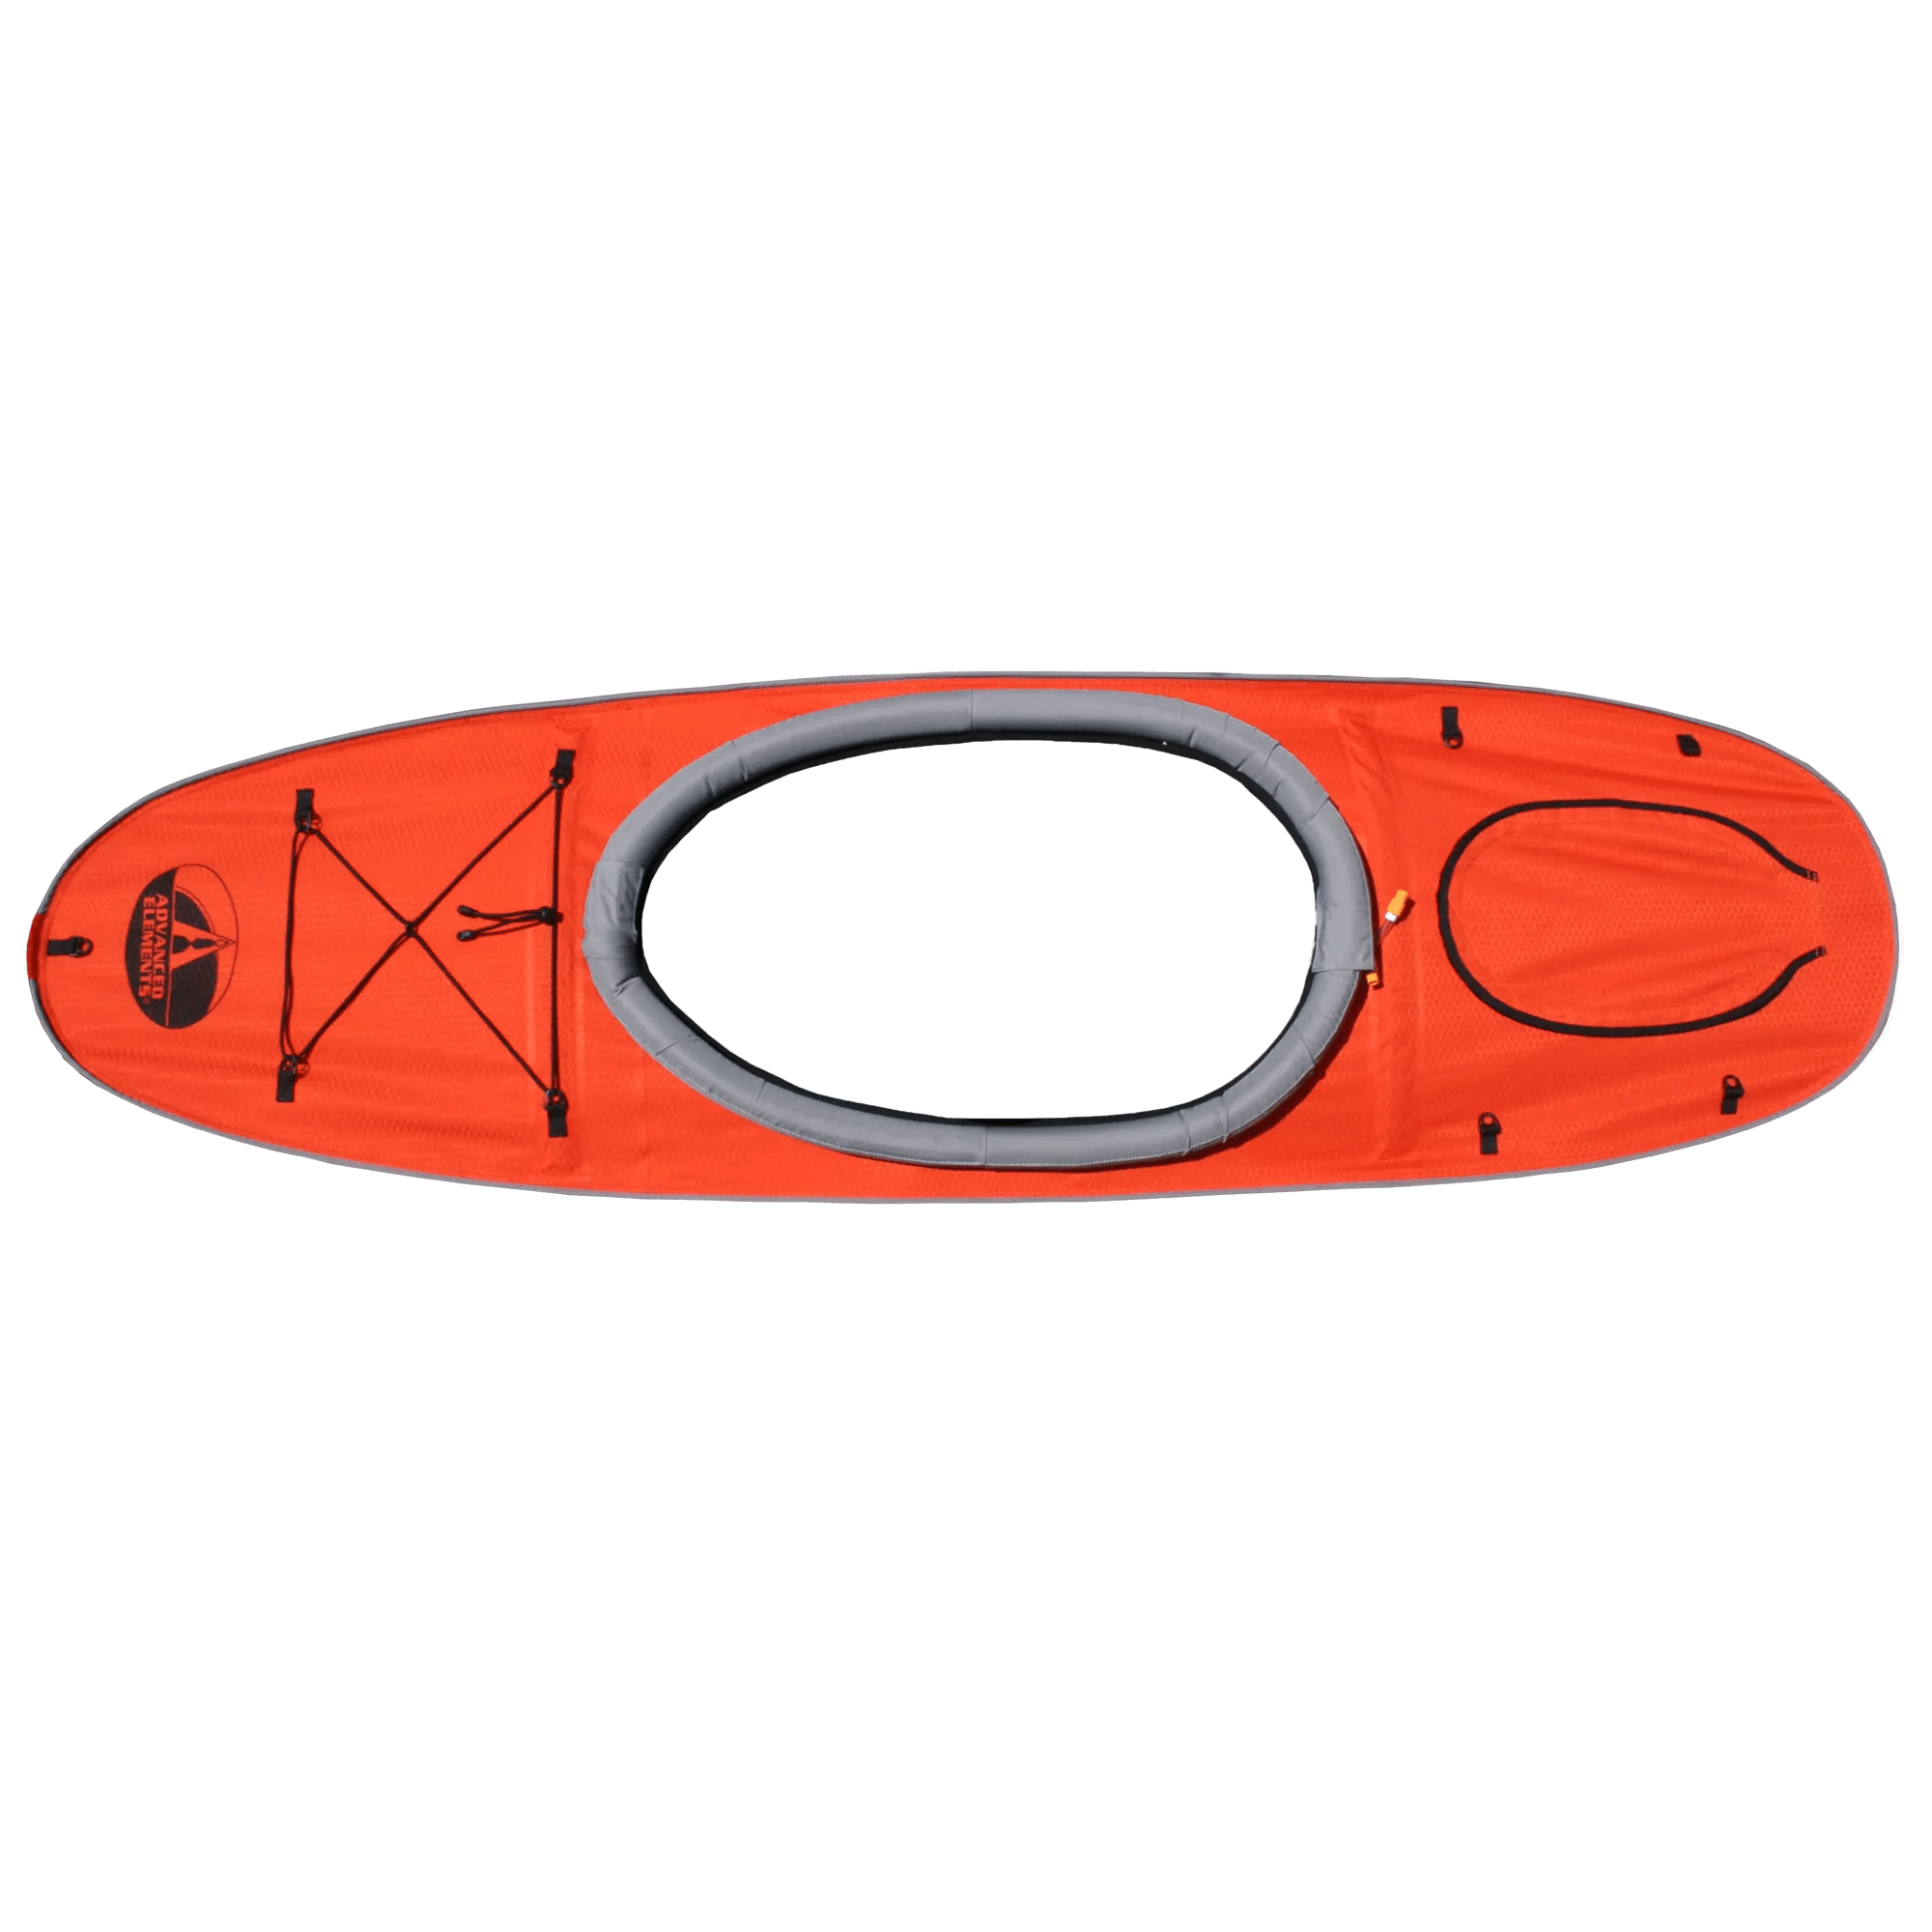 ADVANCED ELEMENTS - Pont de conversion pour kayak Advancedframe Convertible – Simple - Red - AE2021-R - ISO